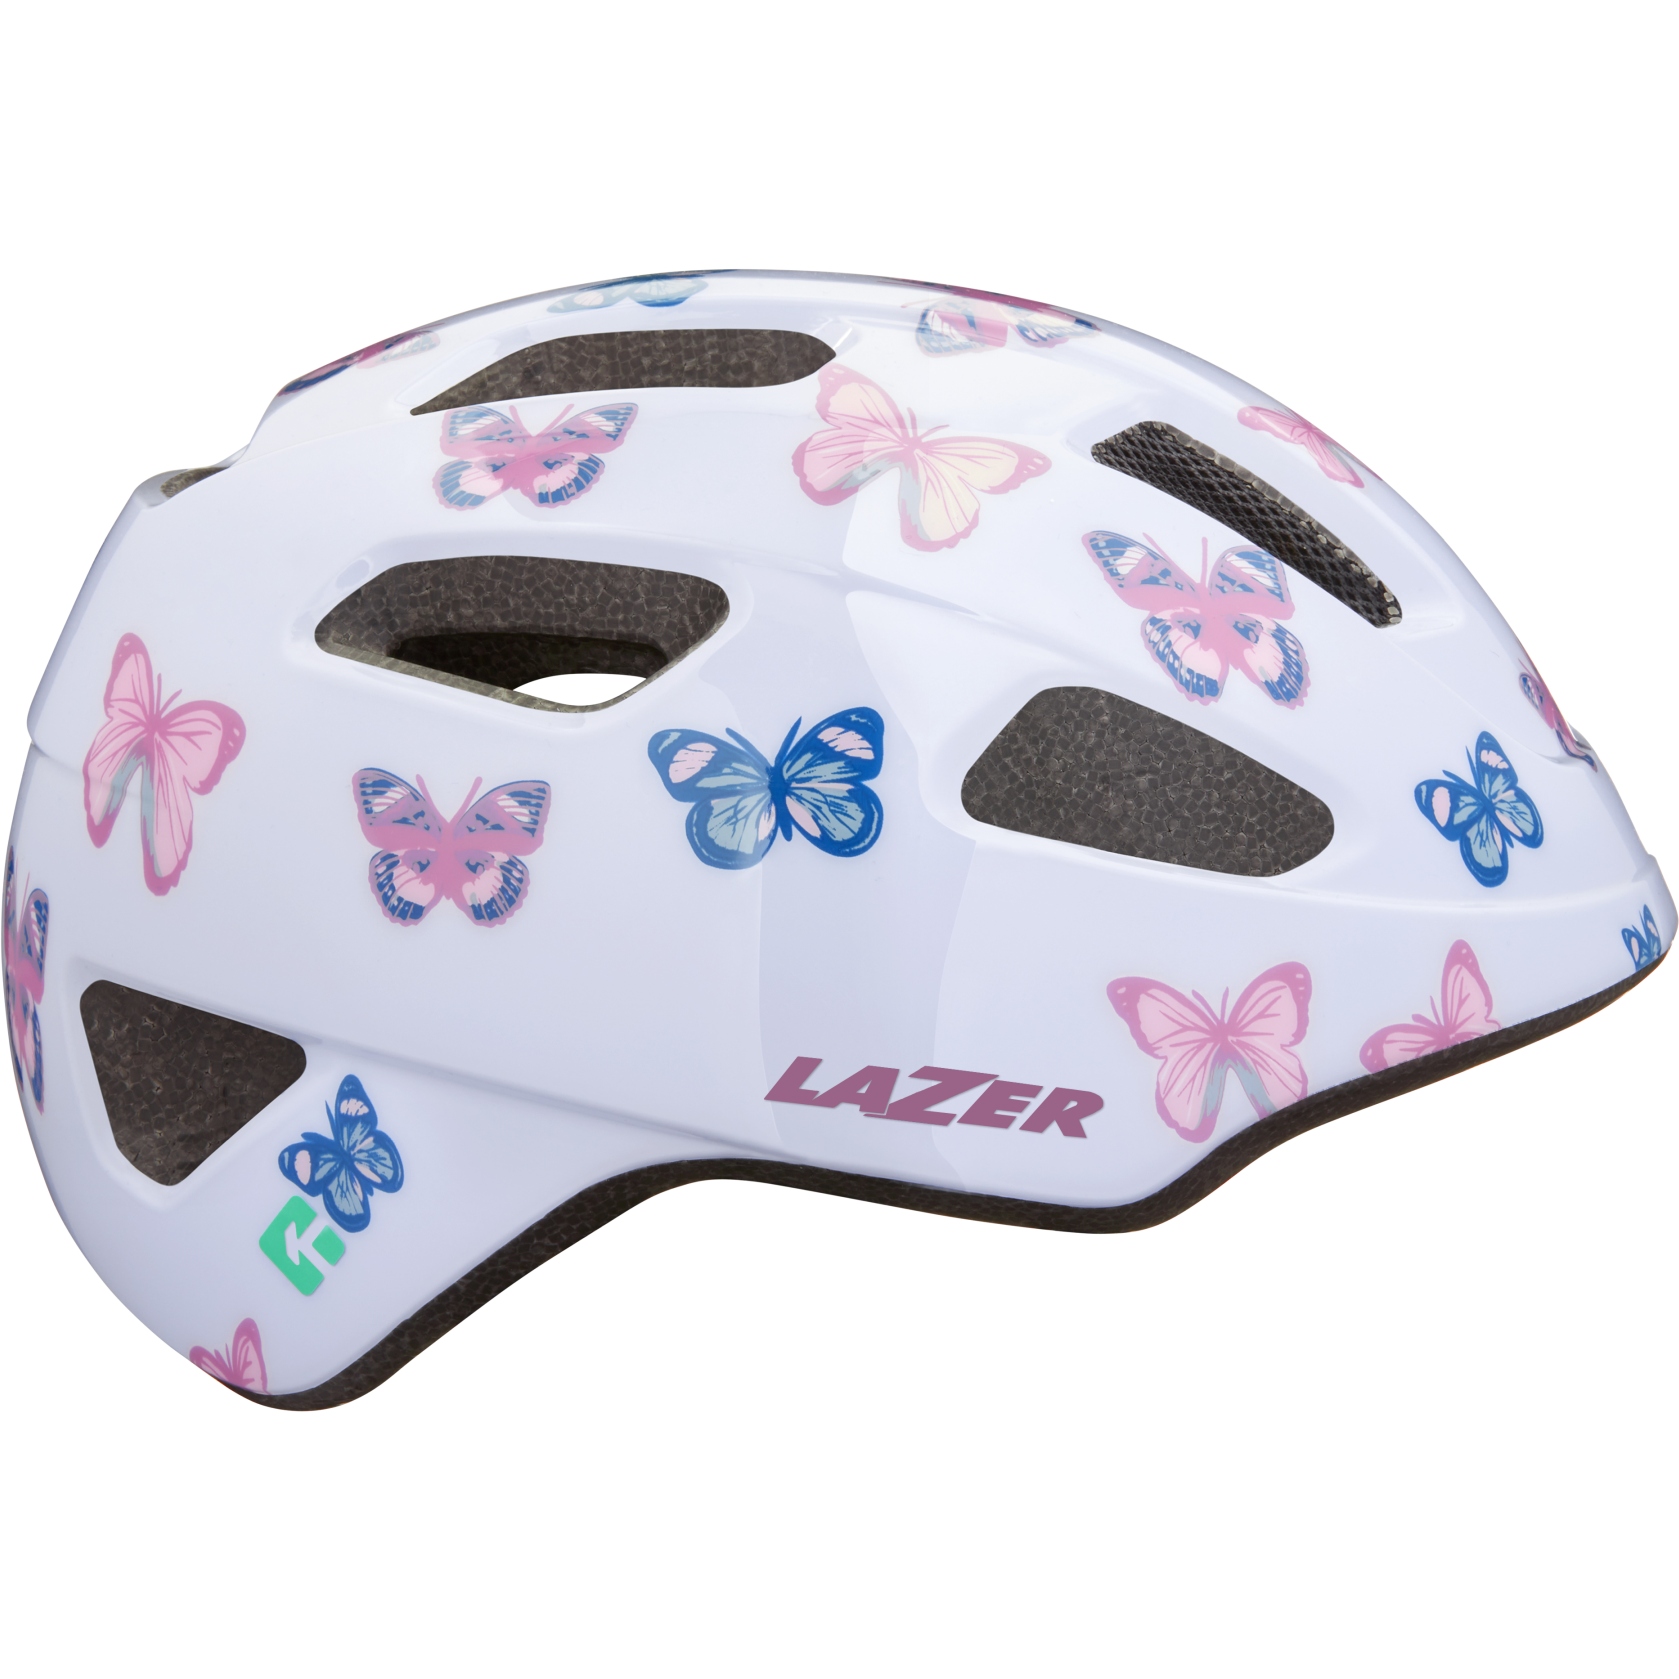 Image of Lazer Nutz KinetiCore Children's Helmet - butterfly